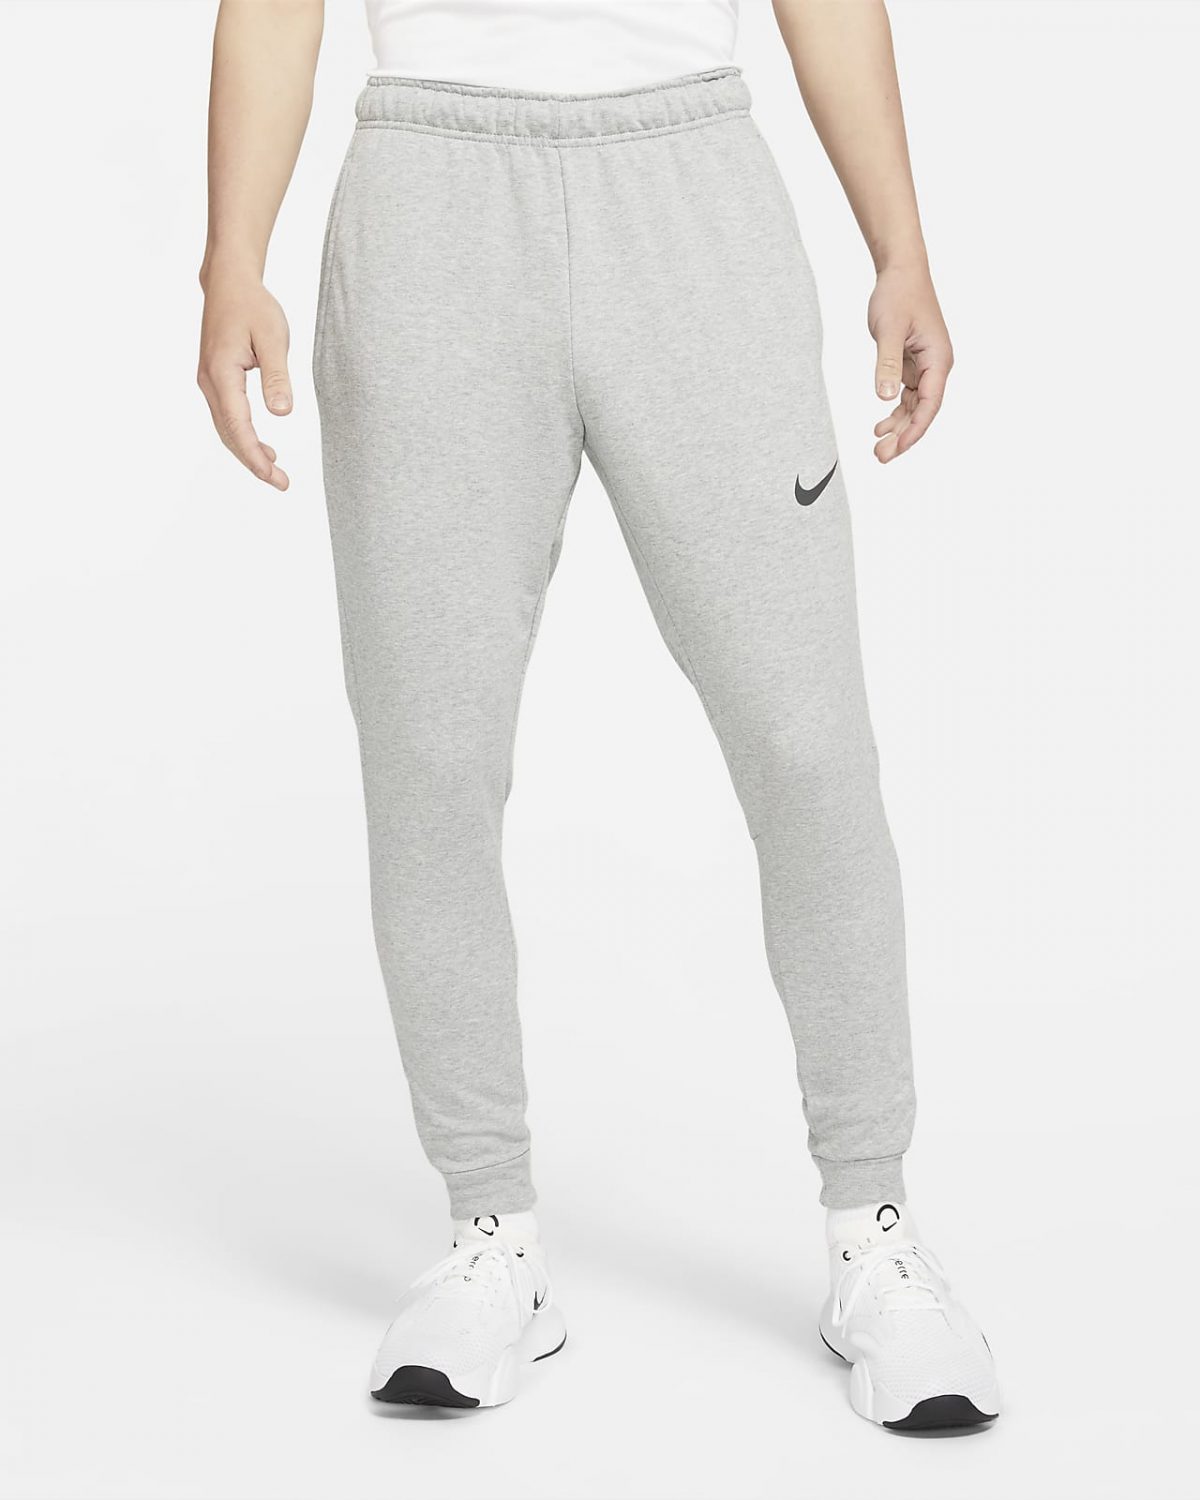 Мужские брюки Nike Dri-FIT фото